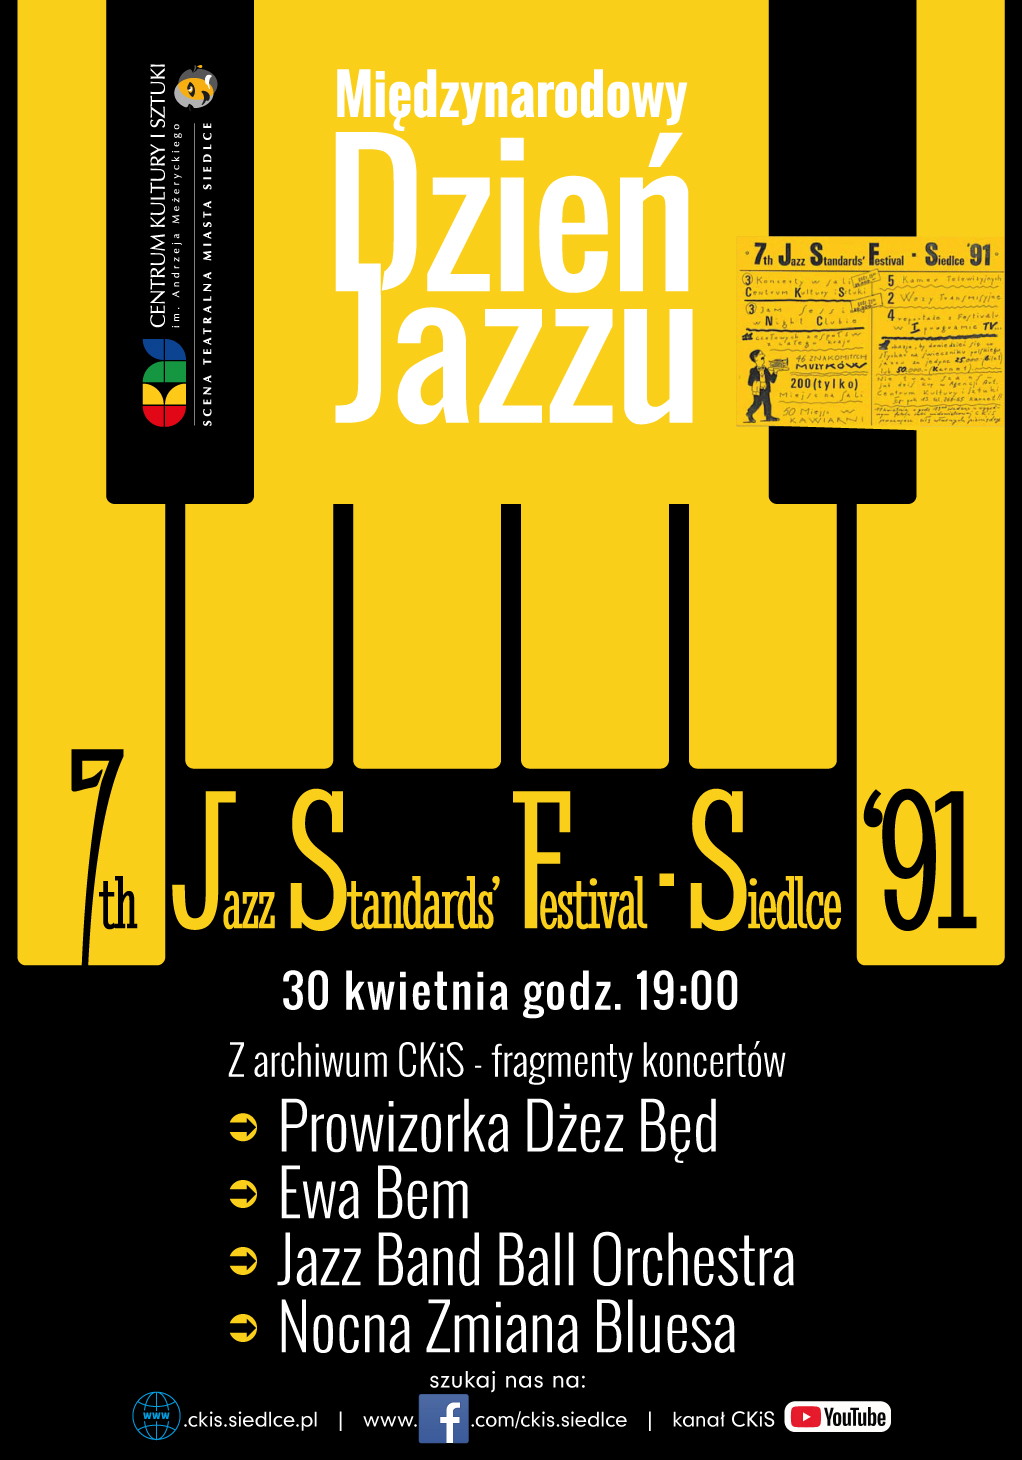 Międzynarodowy Dzień Jazzu - fragmenty archiwalnego koncertu 7th Jazz Standards' Festival Siedlce '91